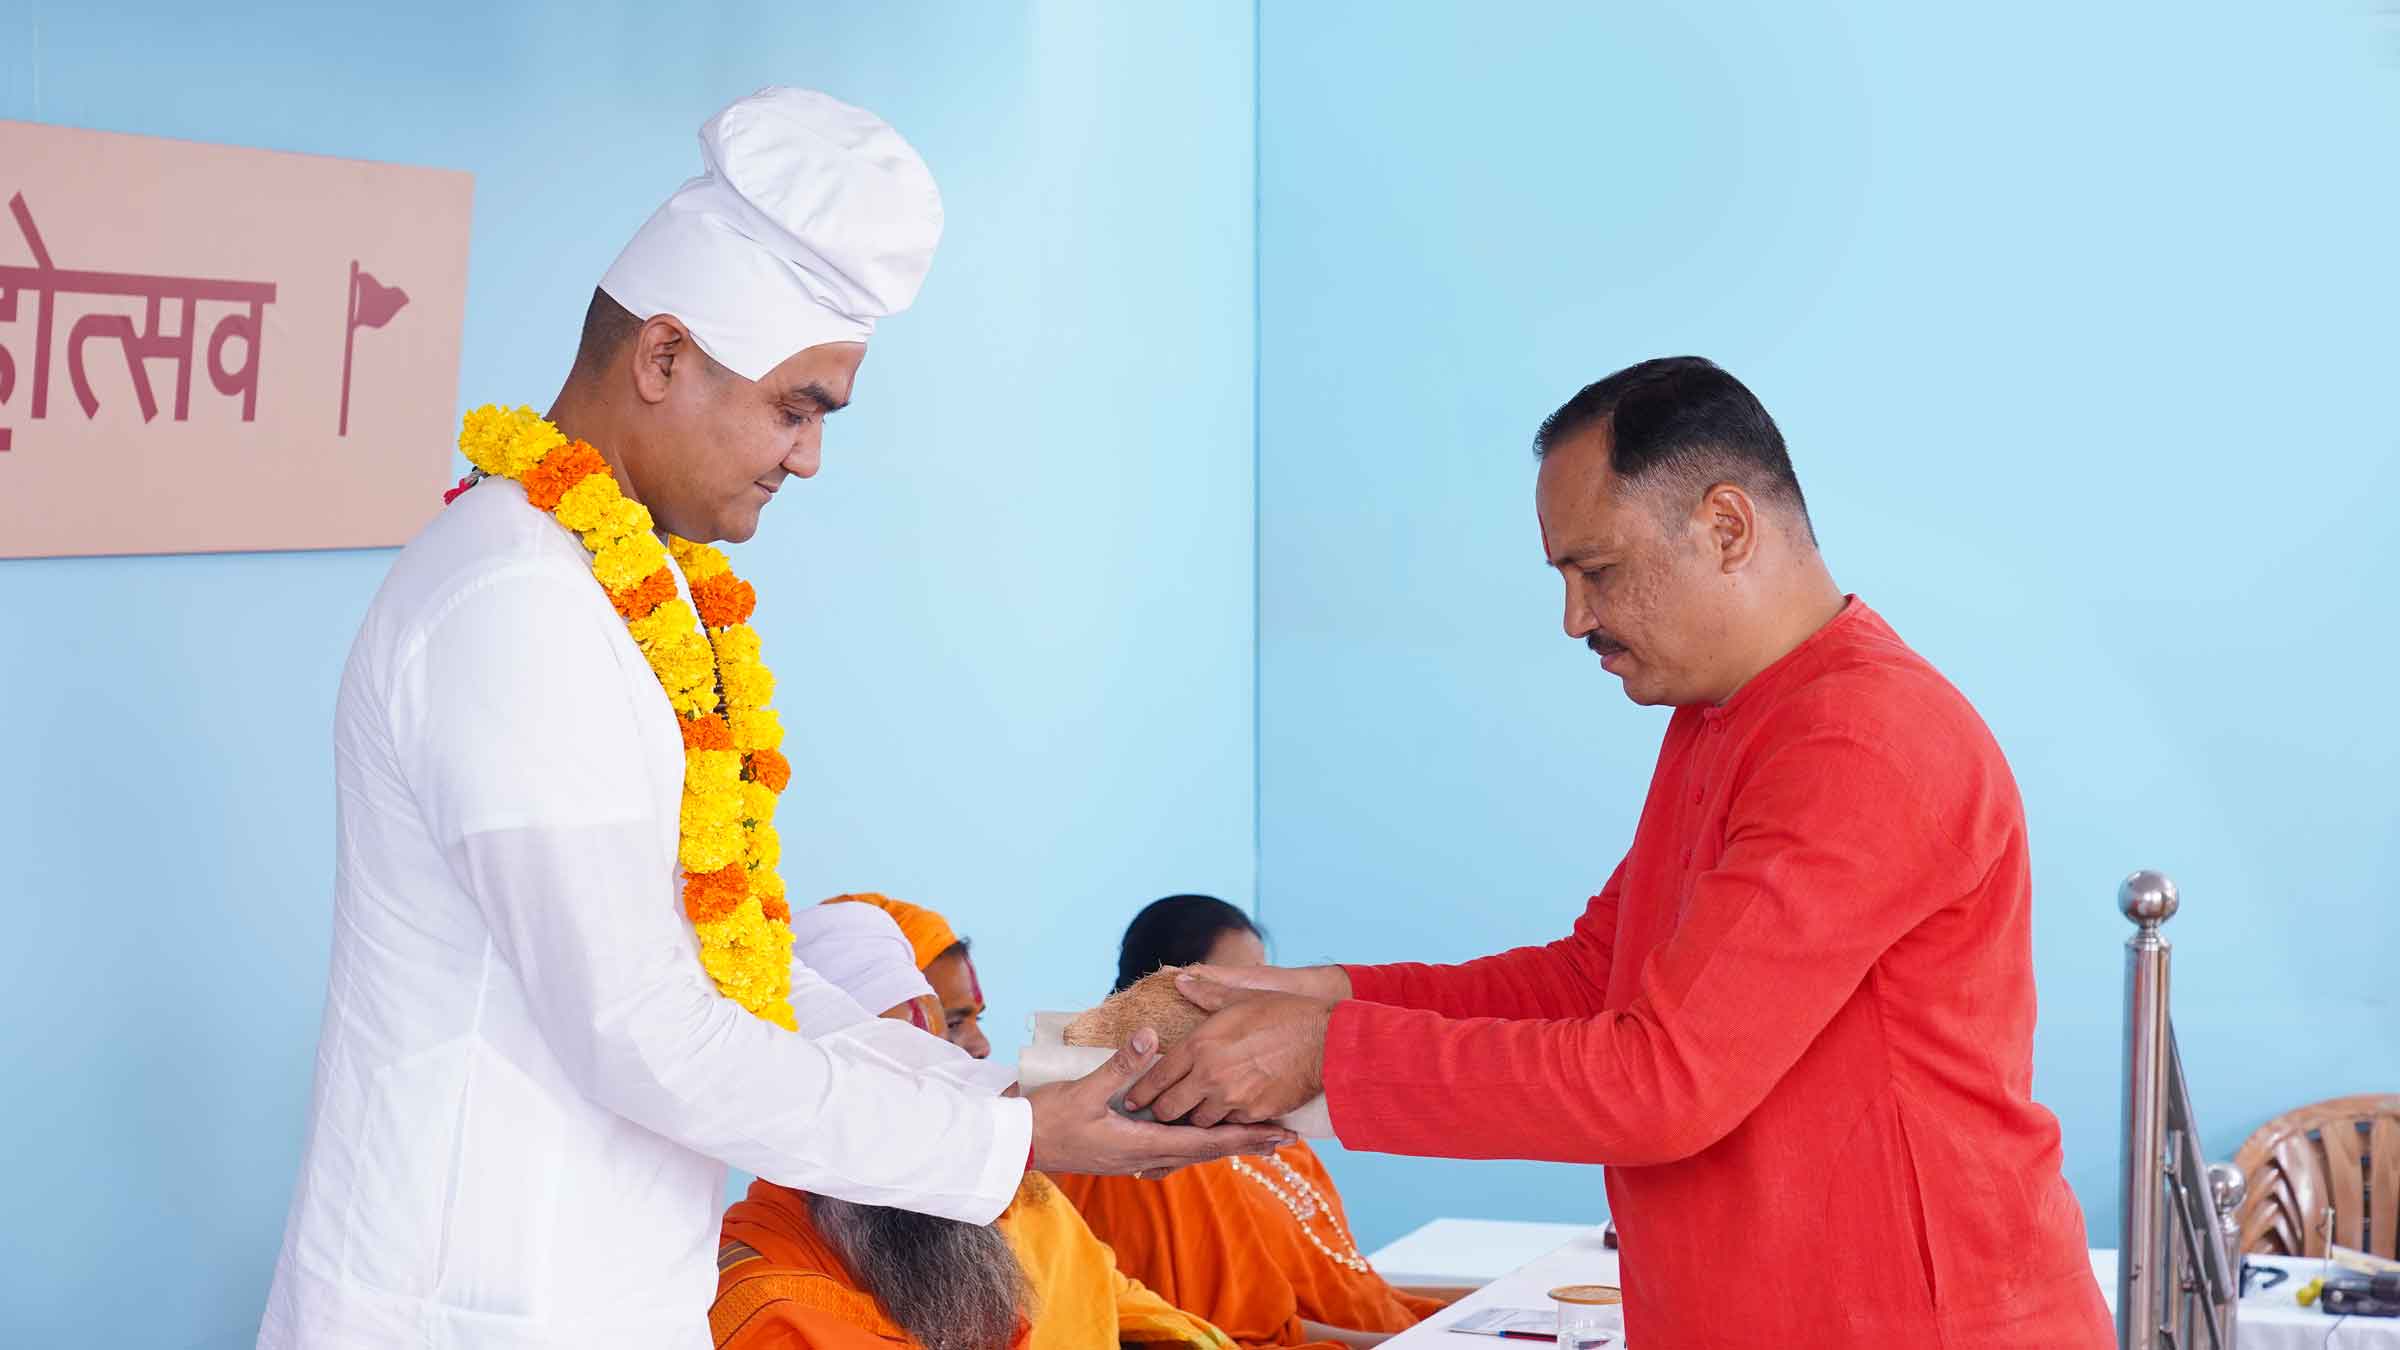 H.H. Sudarshan Maharaj Kapate (President, Global Mahanubhav Sangh, Chh. Sambhajinagar, Maharashtra) being felicitated by Mr Uday Badgujar (Co-ordinator, Hindu Janajagruti Samiti, Nanded, Maharashtra)